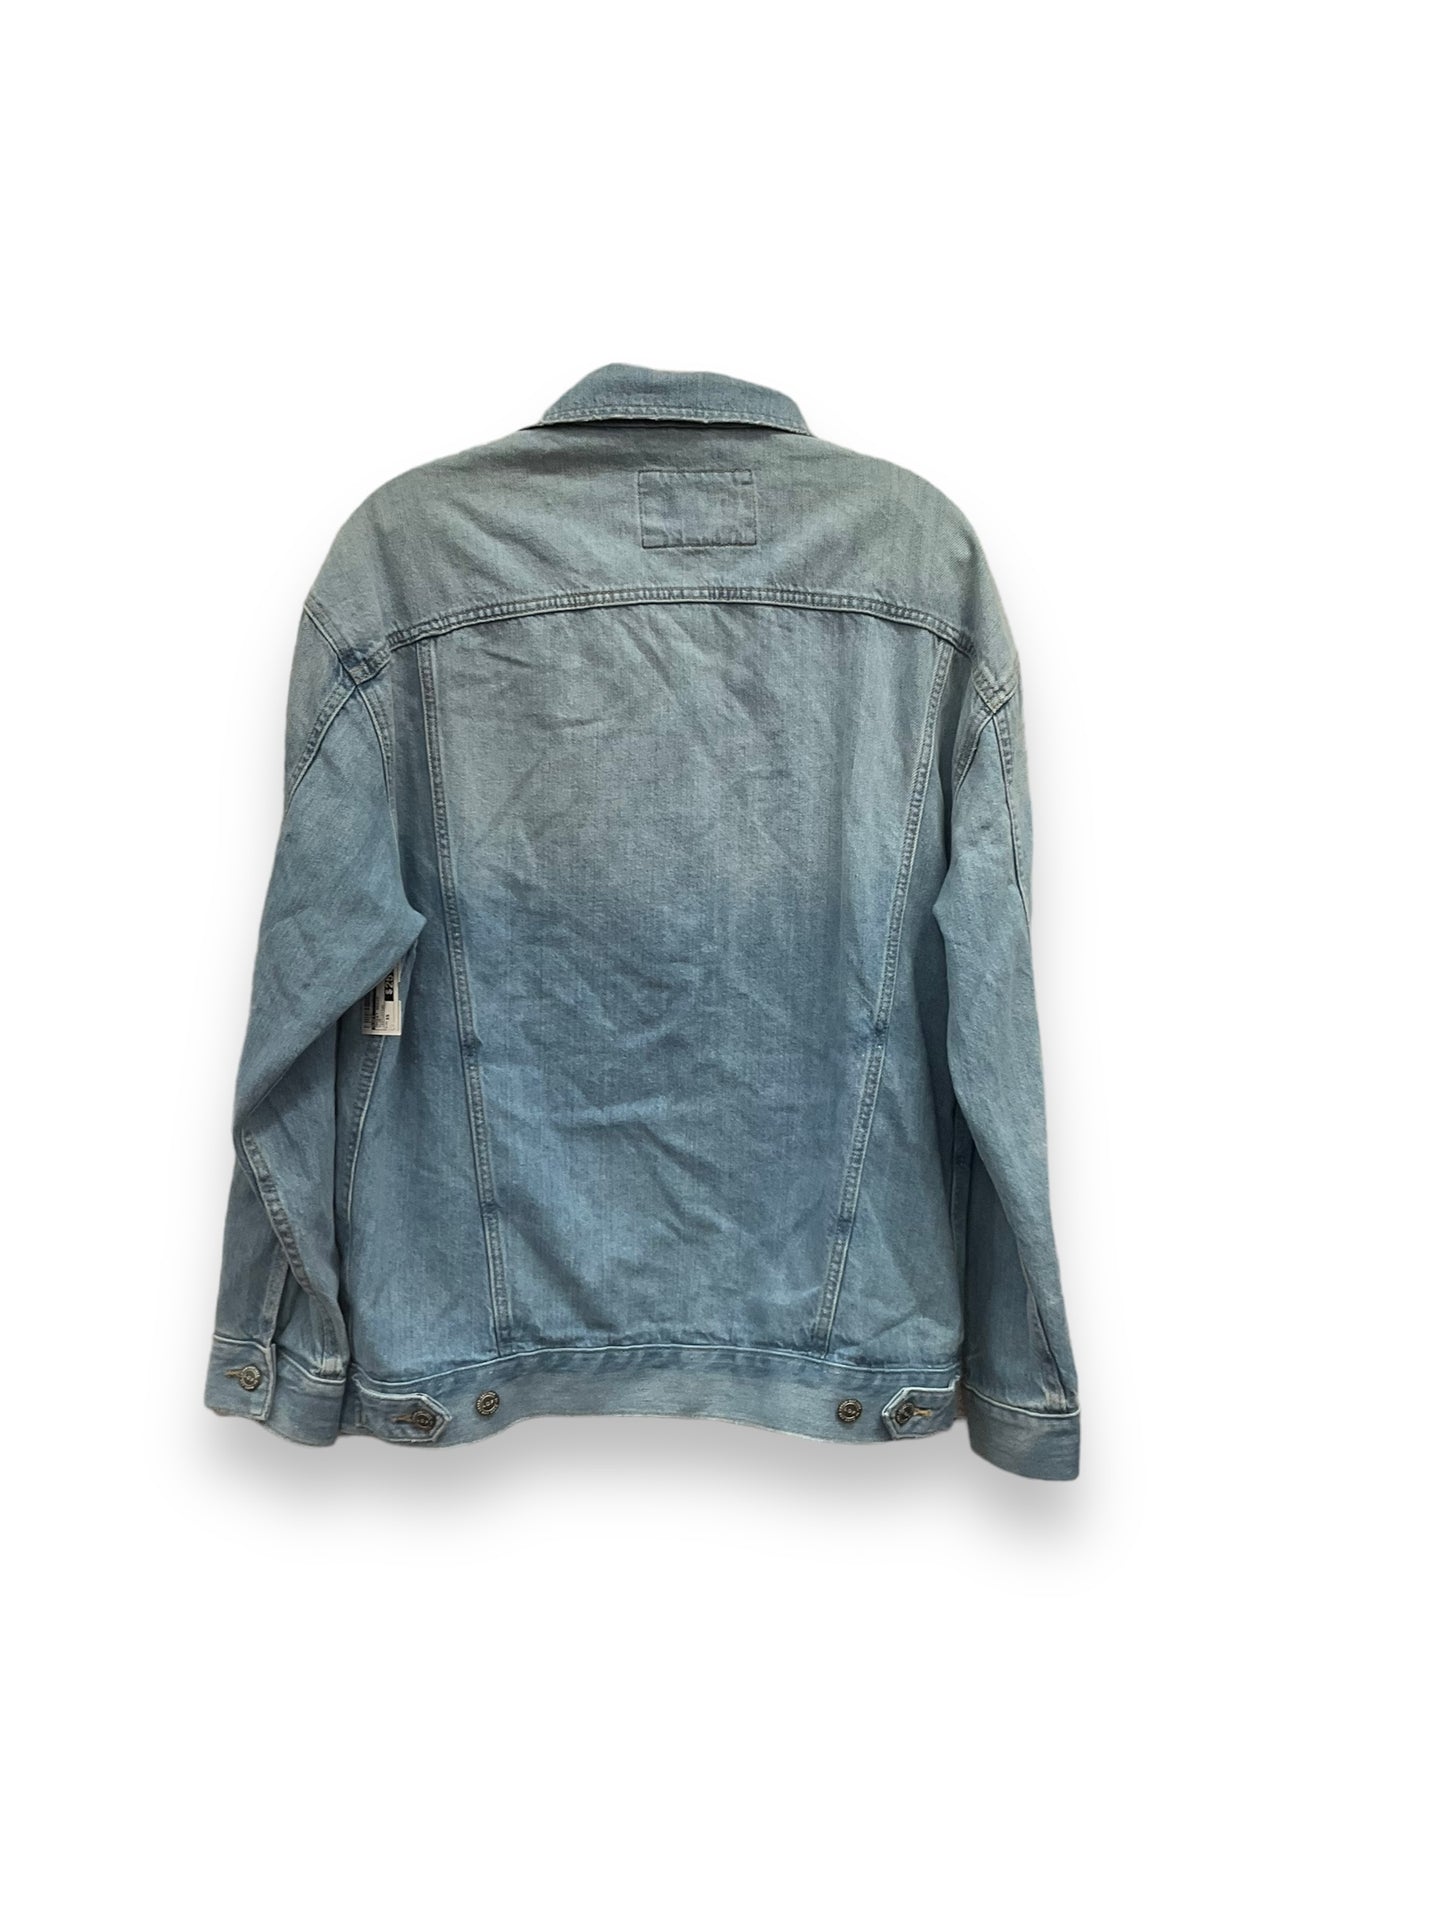 Jacket Denim By Loft  Size: Xs